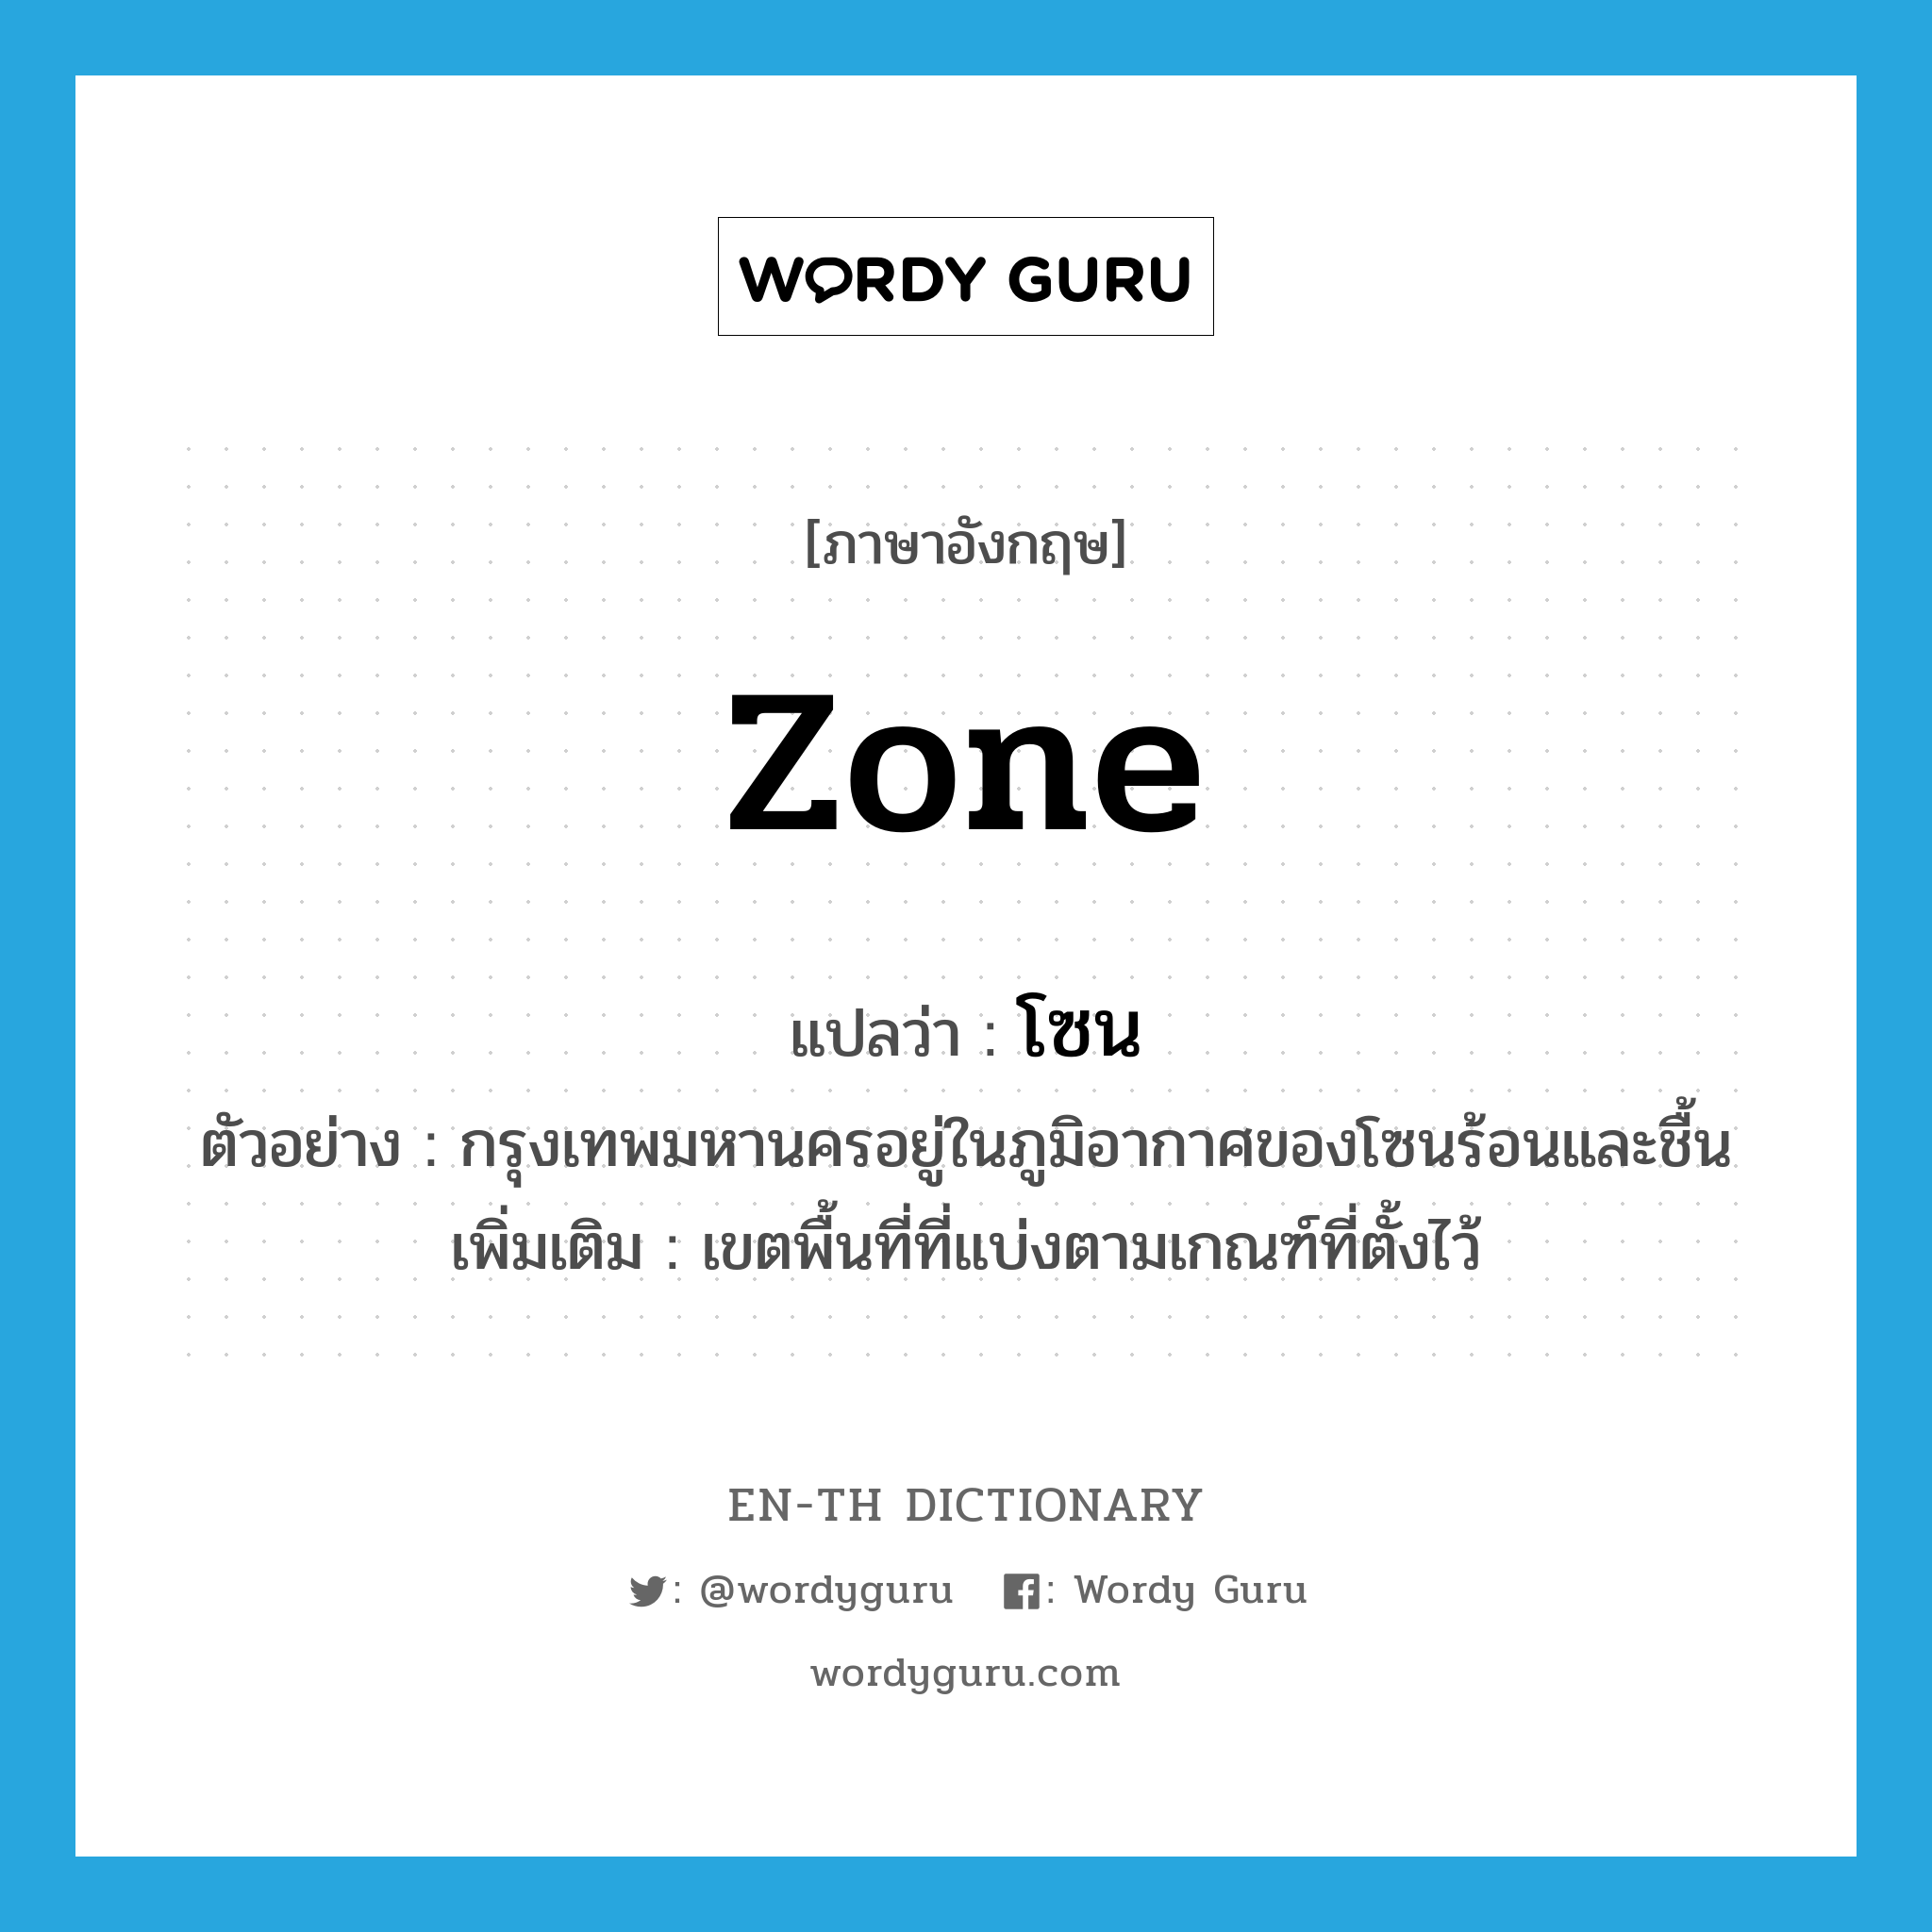 zone แปลว่า?, คำศัพท์ภาษาอังกฤษ zone แปลว่า โซน ประเภท N ตัวอย่าง กรุงเทพมหานครอยู่ในภูมิอากาศของโซนร้อนและชื้น เพิ่มเติม เขตพื้นที่ที่แบ่งตามเกณฑ์ที่ตั้งไว้ หมวด N